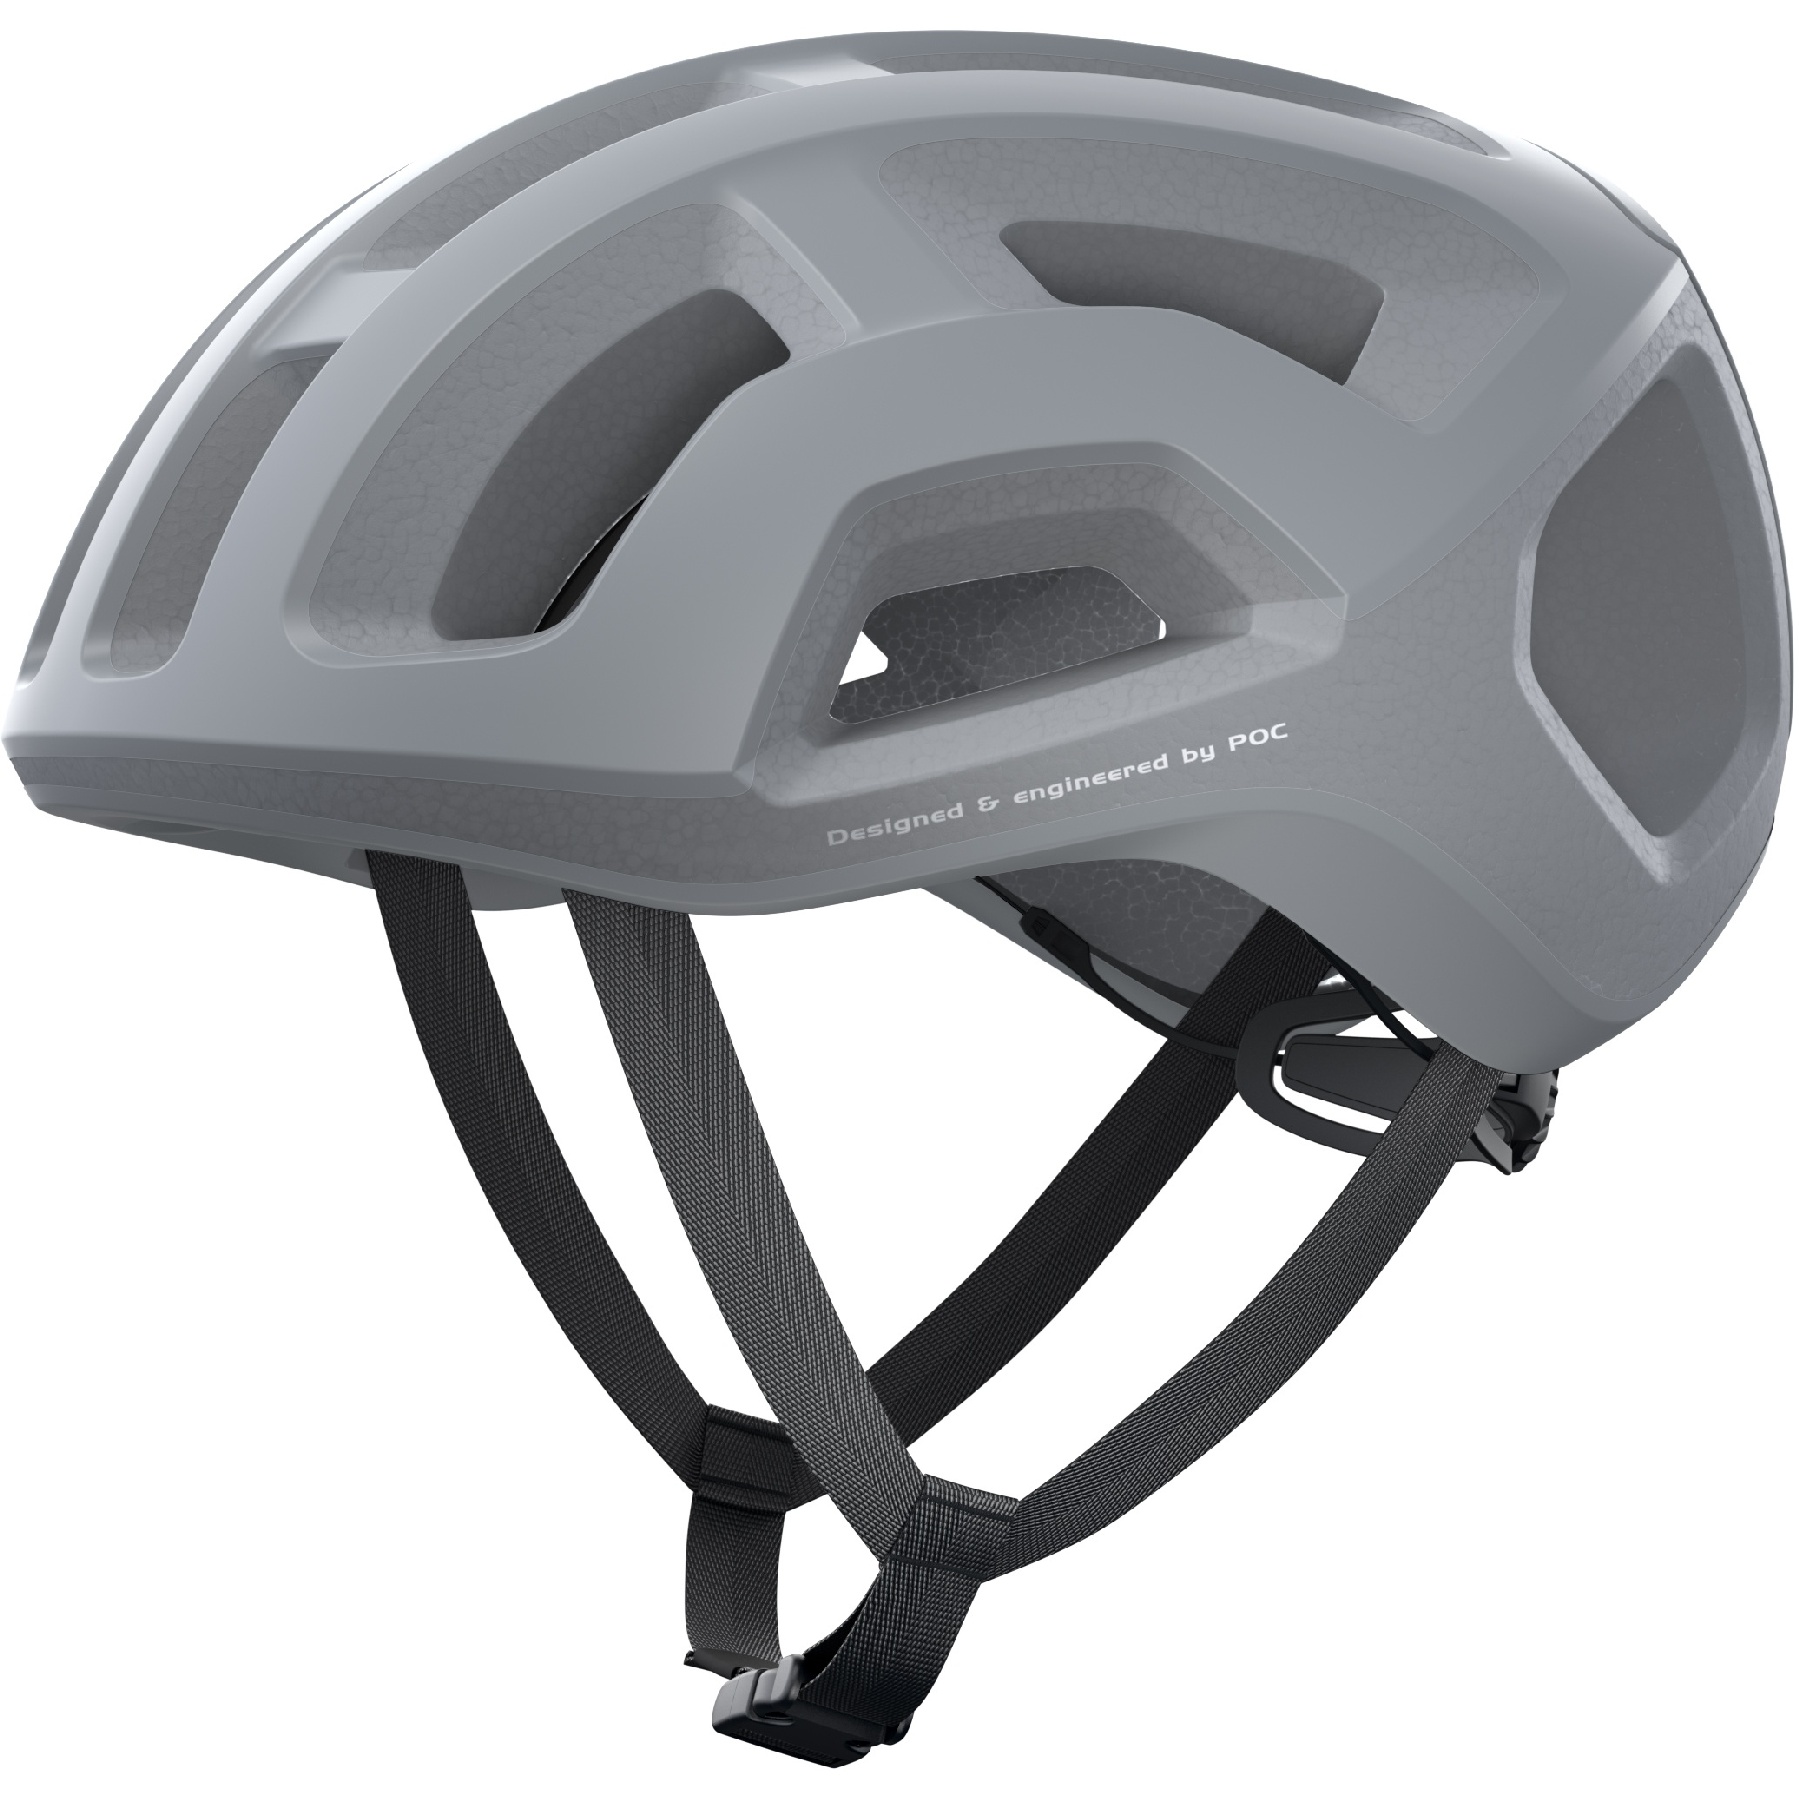 Produktbild von POC Ventral Lite Helm - 1051 Granite Grey Matt